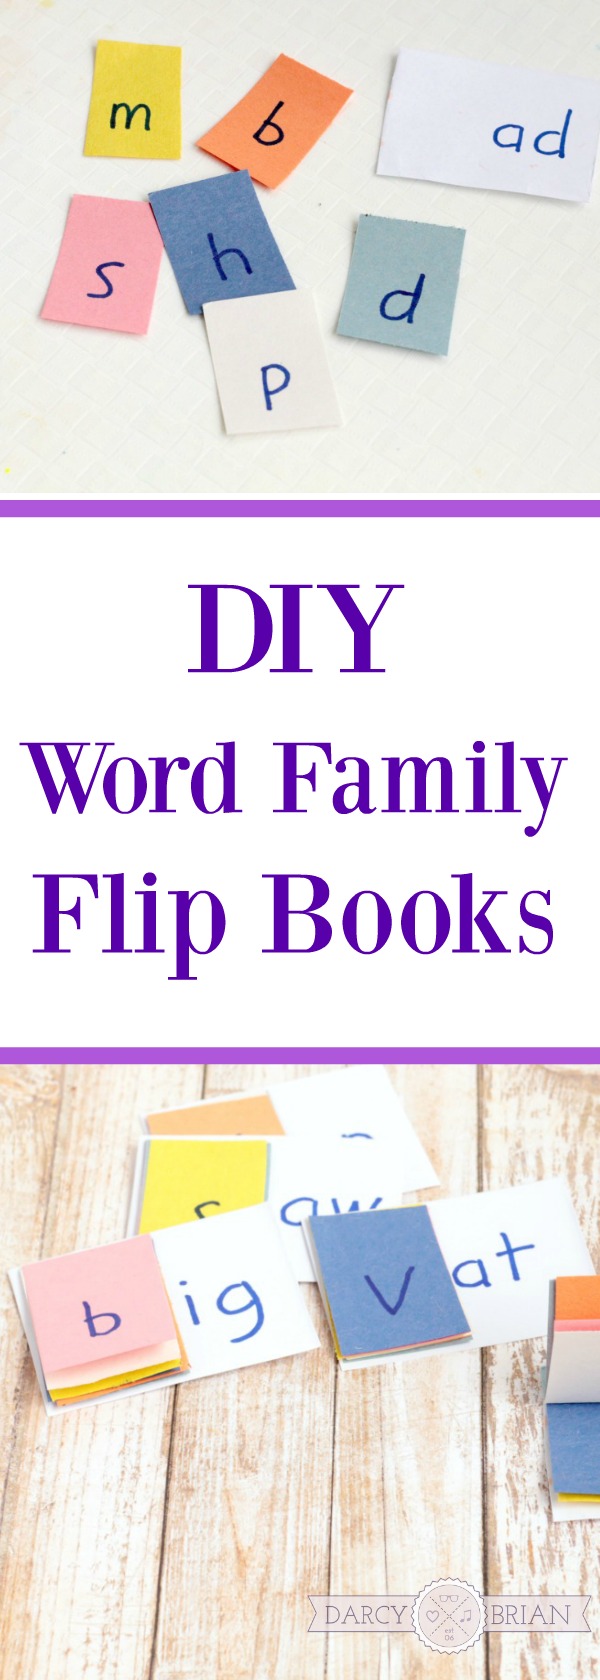 diy-sight-word-family-flip-books-for-kindergarten